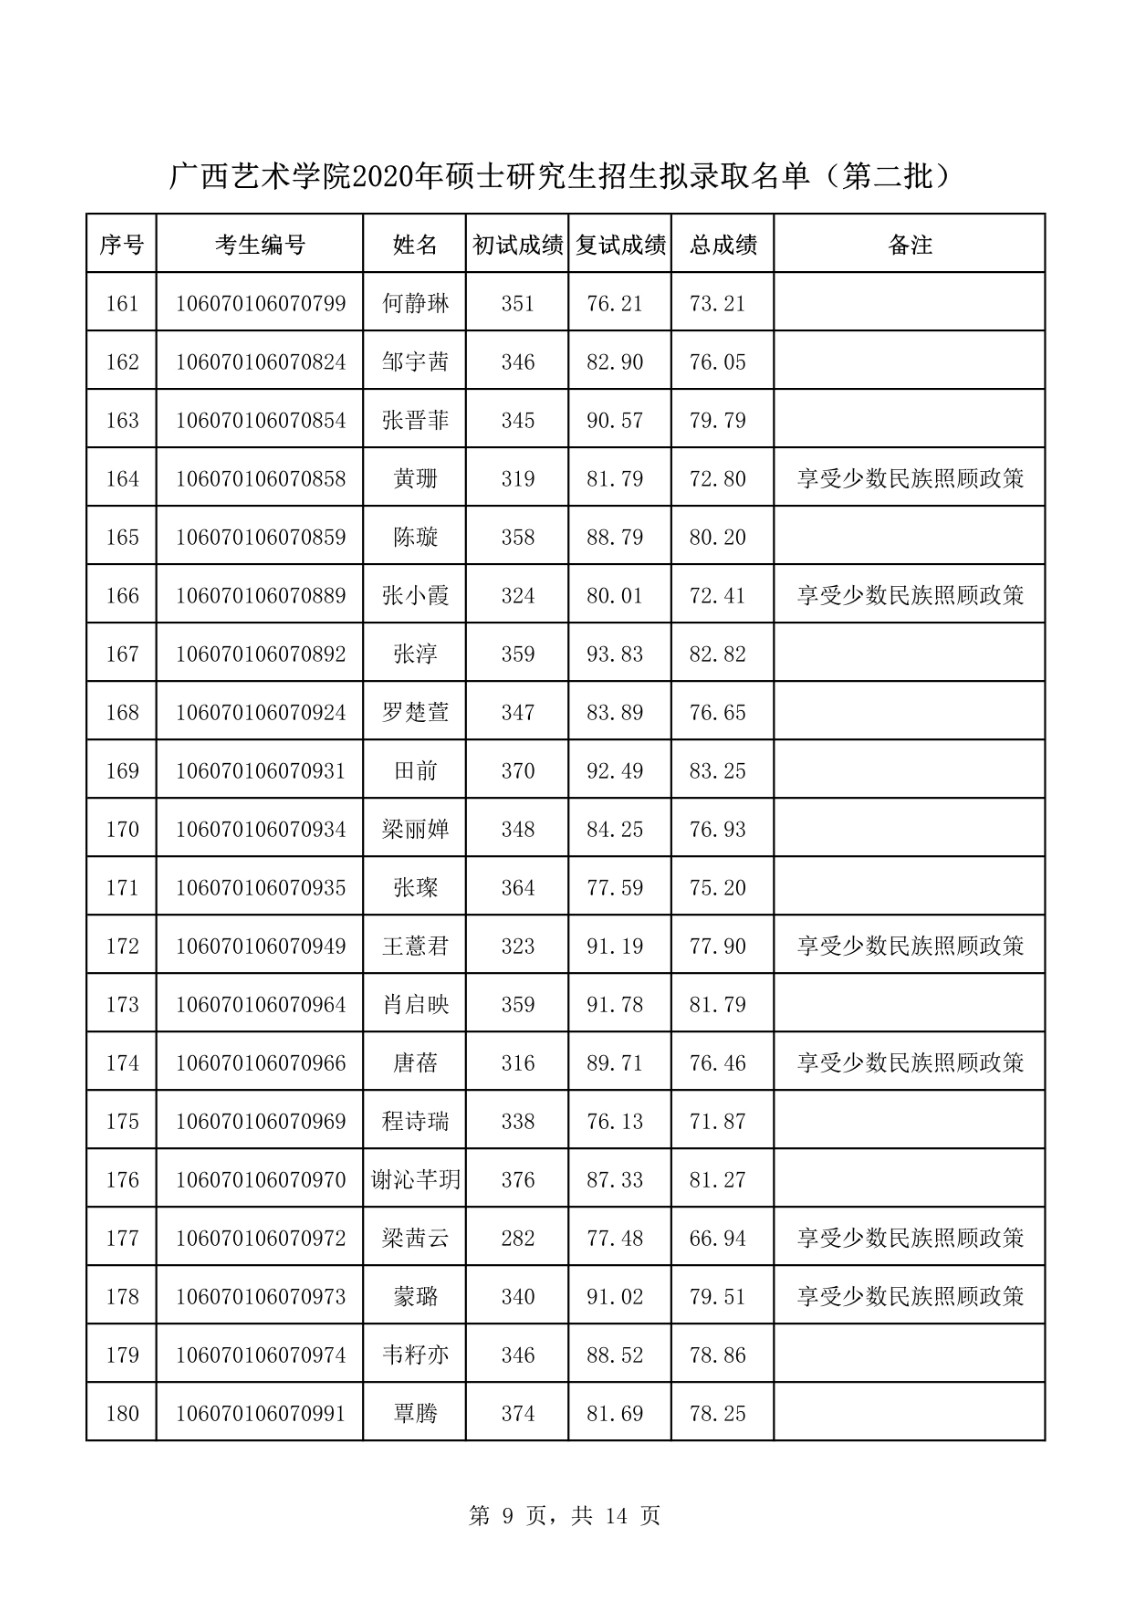 2020年广西艺术学院全日制硕士研究生第二批拟录取名单公示